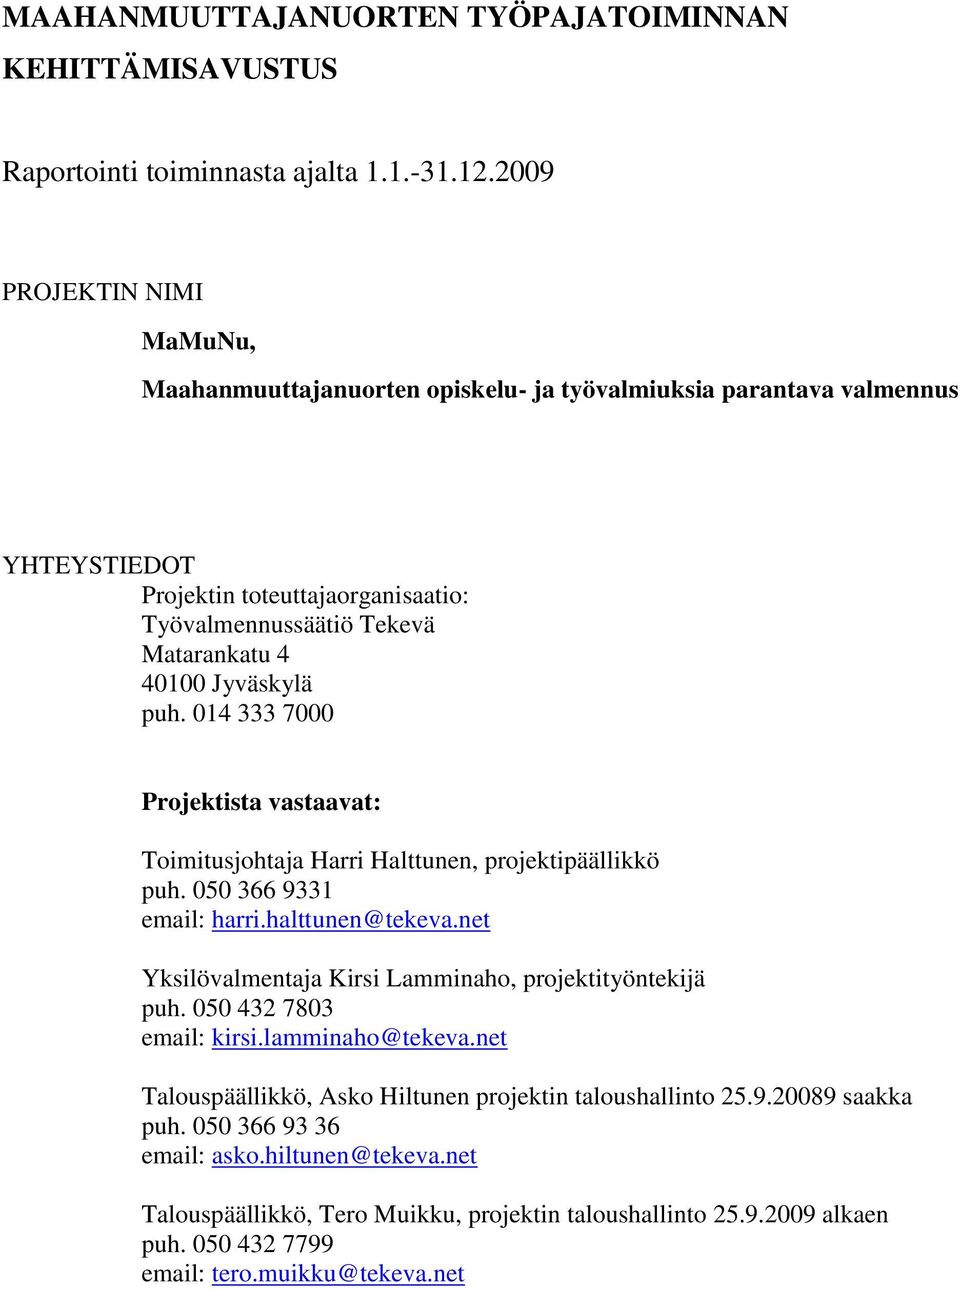 Jyväskylä puh. 014 333 7000 Projektista vastaavat: Toimitusjohtaja Harri Halttunen, projektipäällikkö puh. 050 366 9331 email: harri.halttunen@tekeva.